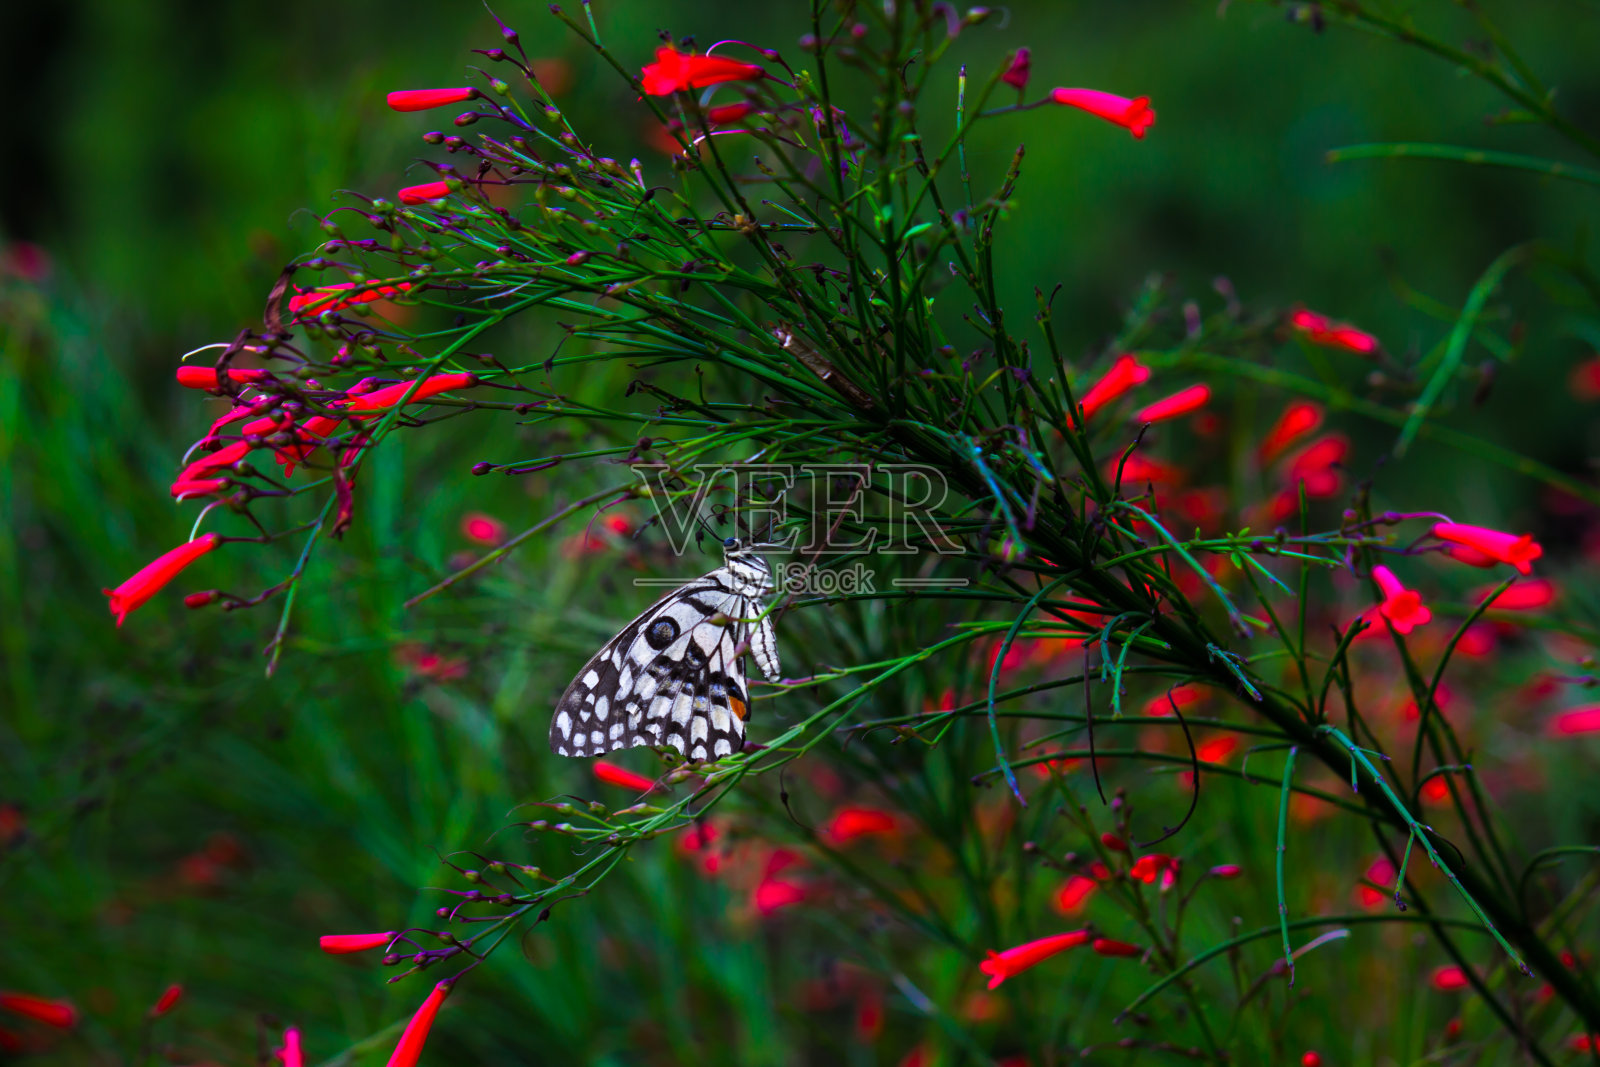 大眼凤蝶是一种常见的青蝴蝶和广泛分布的燕尾蝶。它也被称为柠檬蝴蝶和格子燕尾蝶，在春天栖息在花卉植物上照片摄影图片